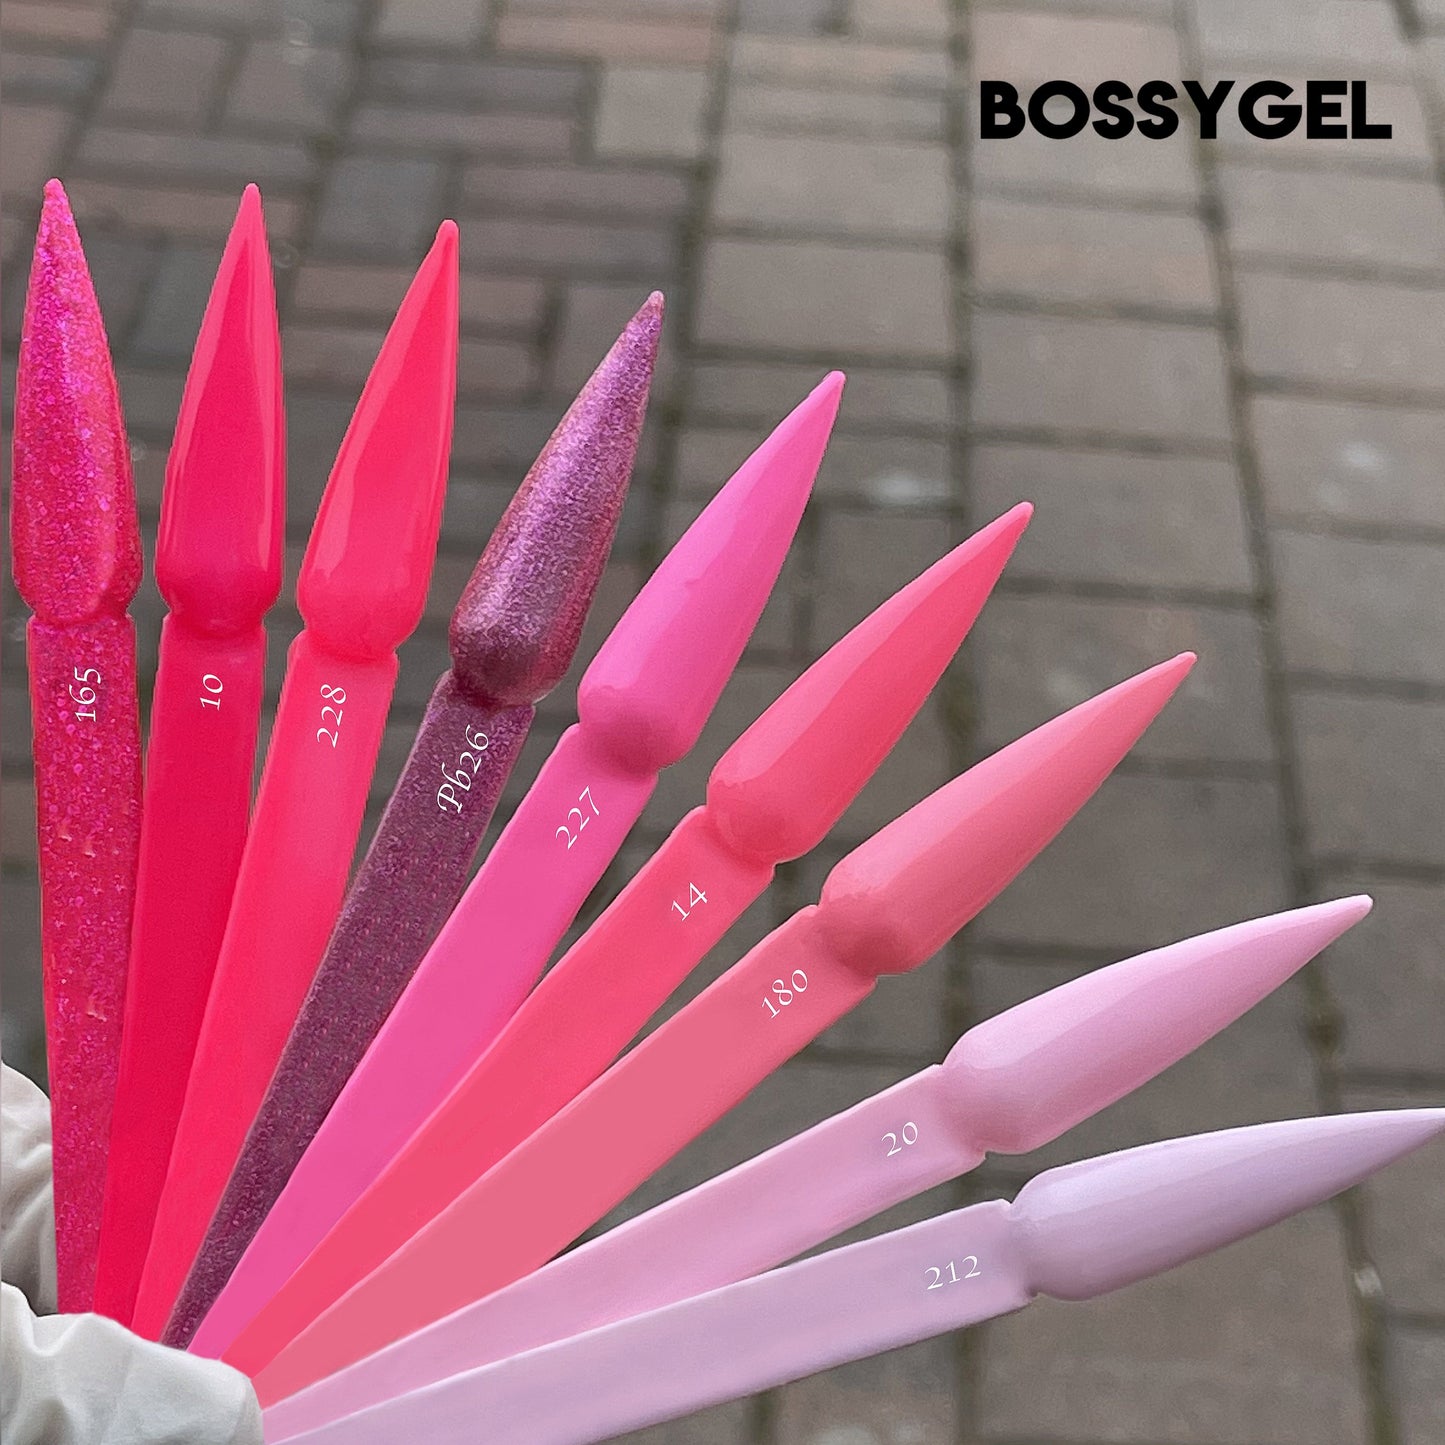 Bossy Gel - Gel Polish(15 ml) # BS20